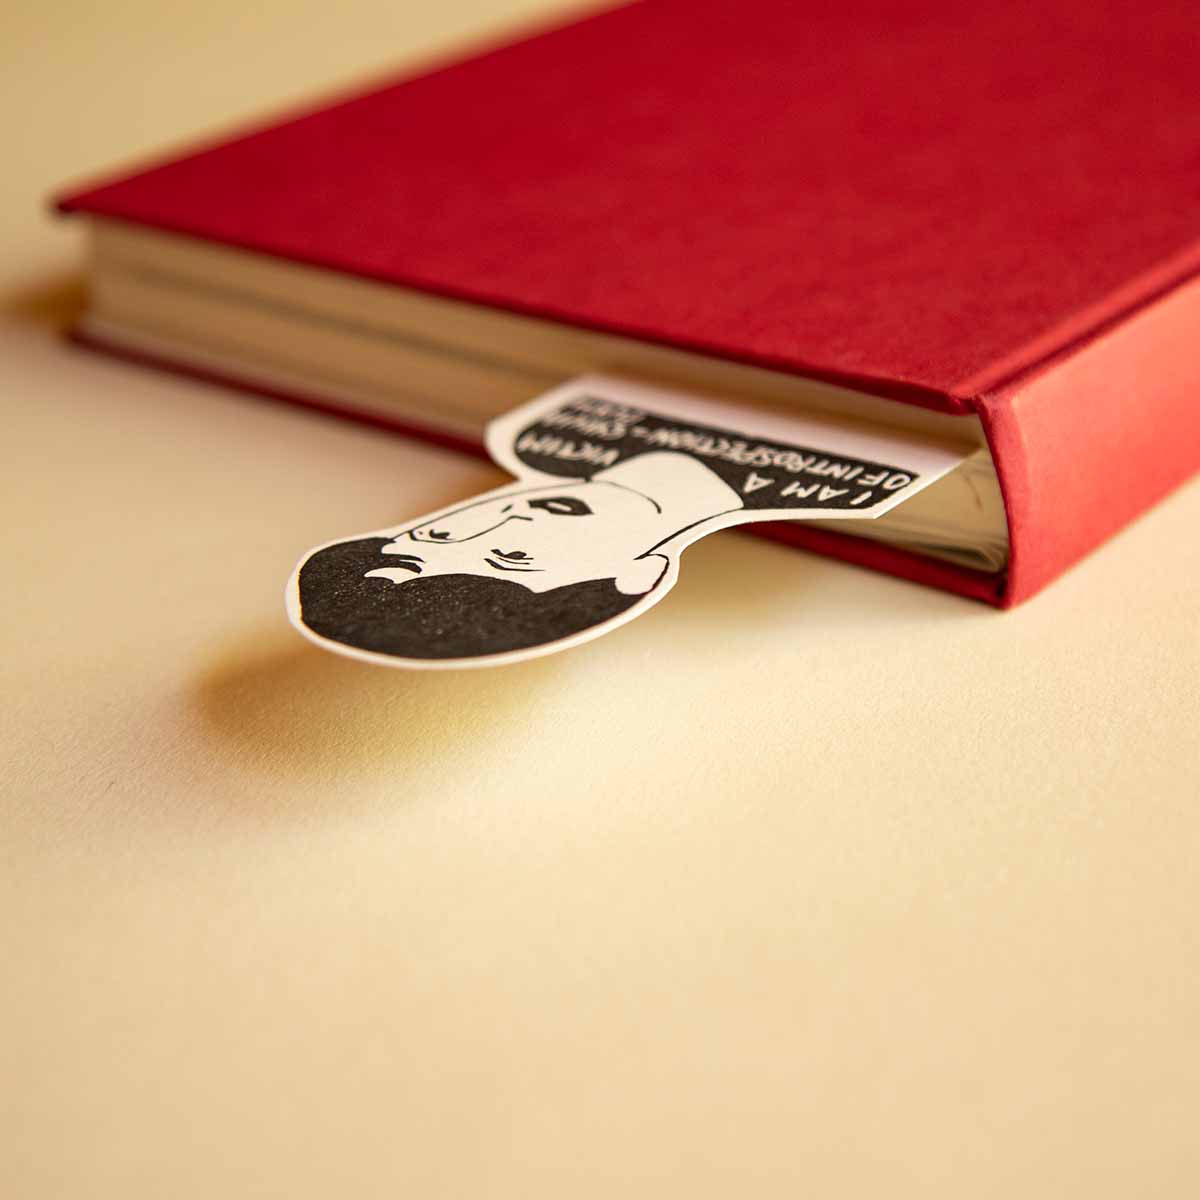 Un libro de tapa dura de color rojo con un marcapáginas de dibujos animados en el que aparece un hombre con bigote asomándose, sobre un fondo beige.